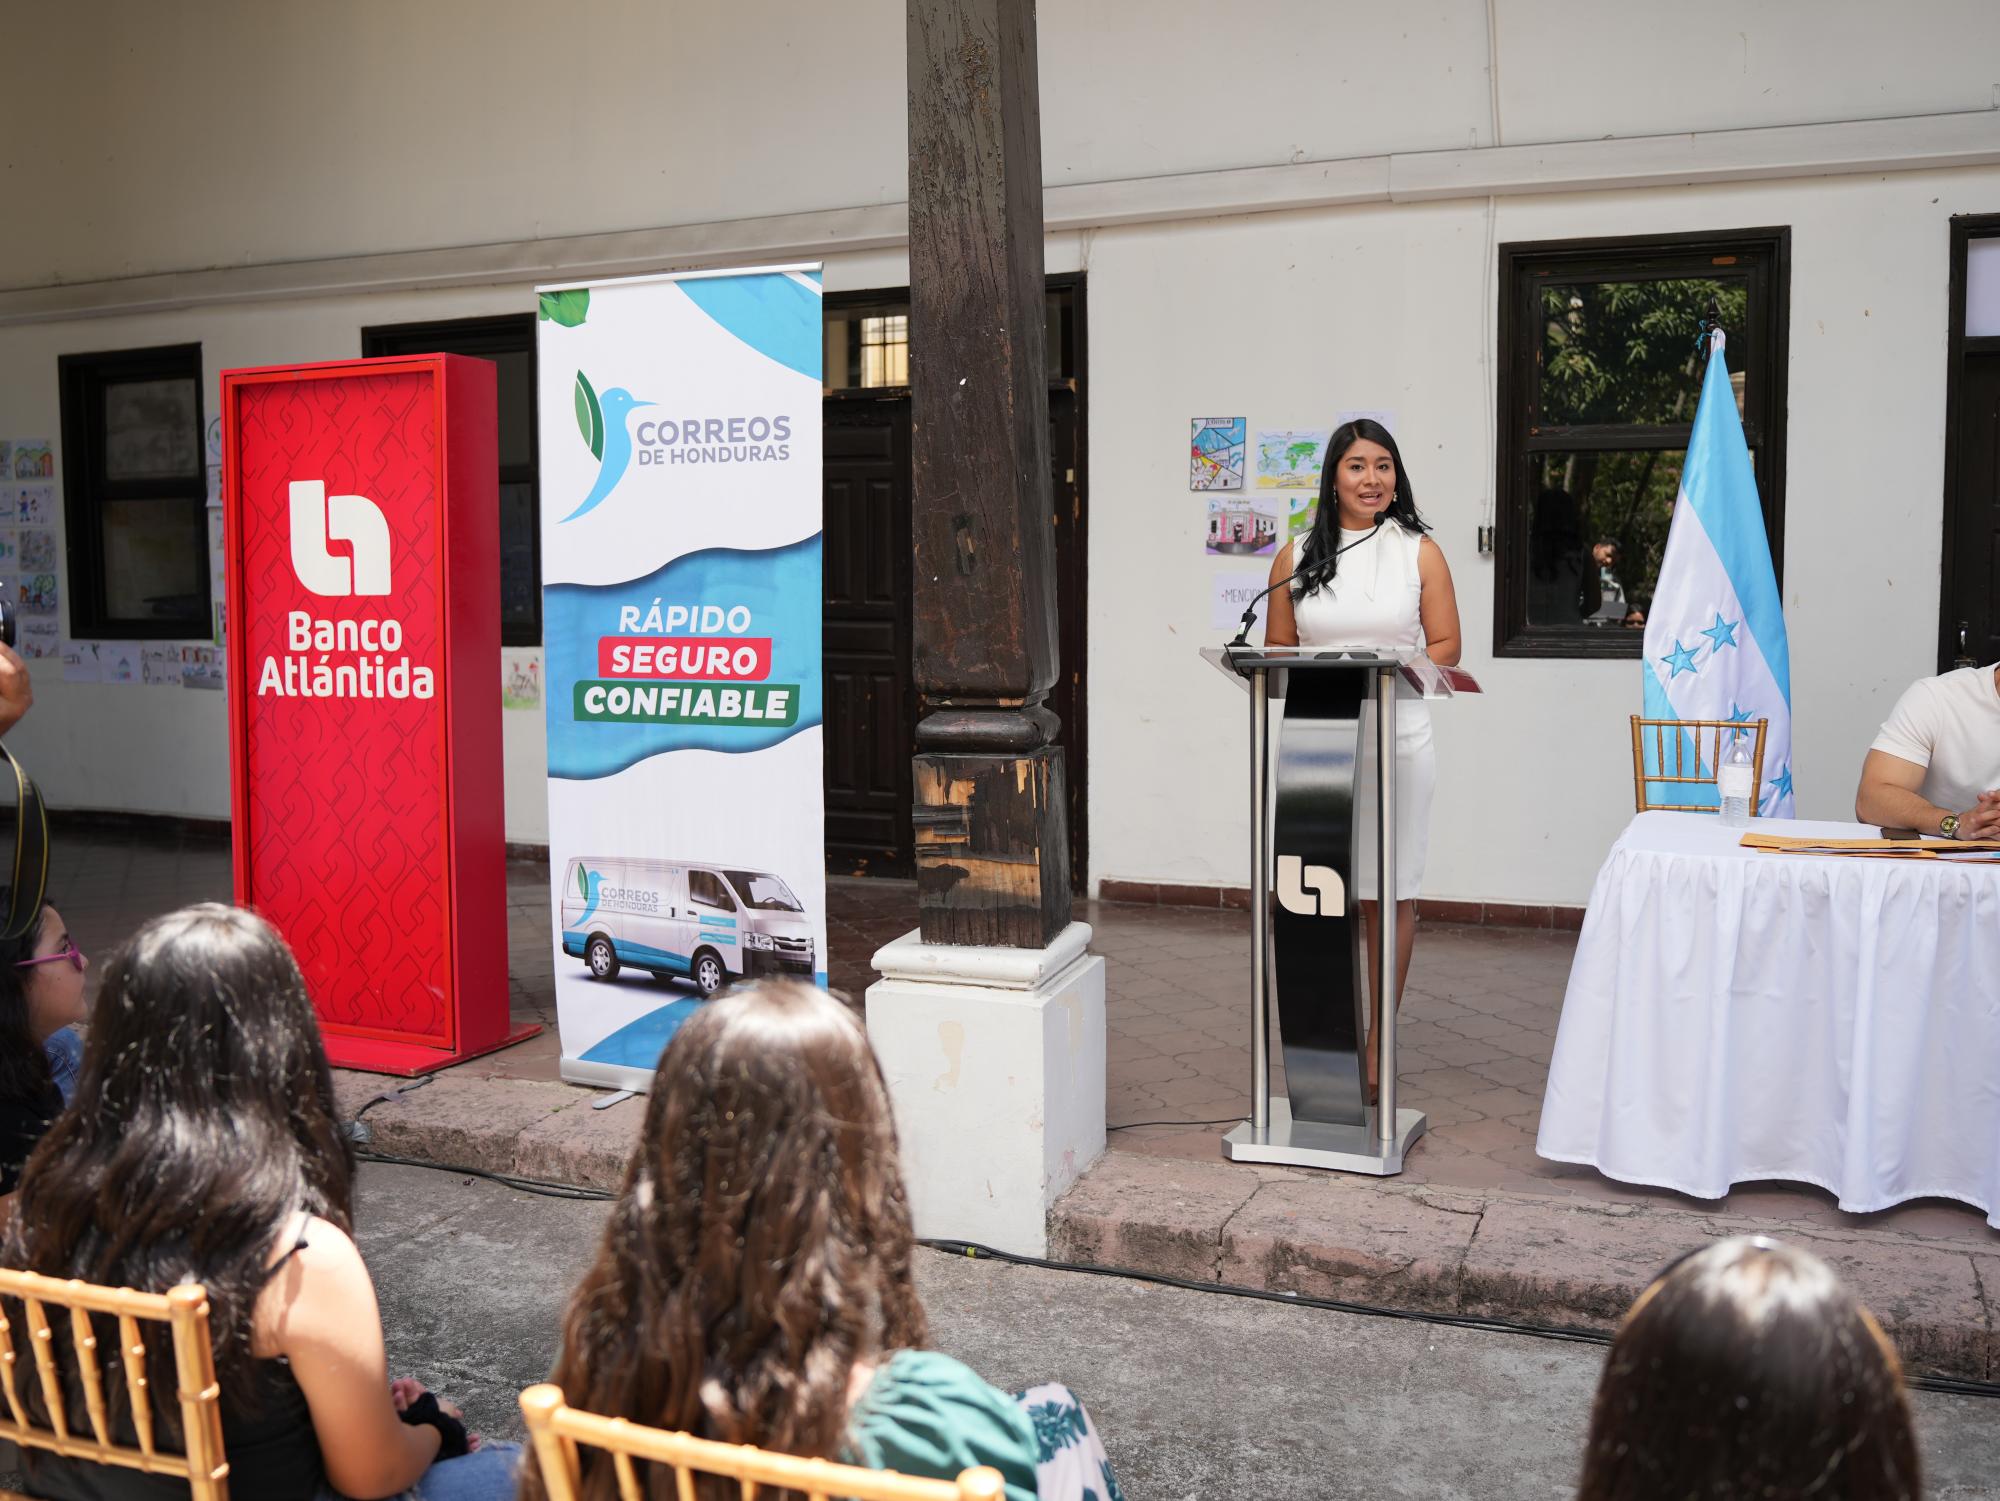 $!Correos de Honduras y Banco Atlántida realizan con éxito el primer concurso de dibujo infantil a nivel nacional